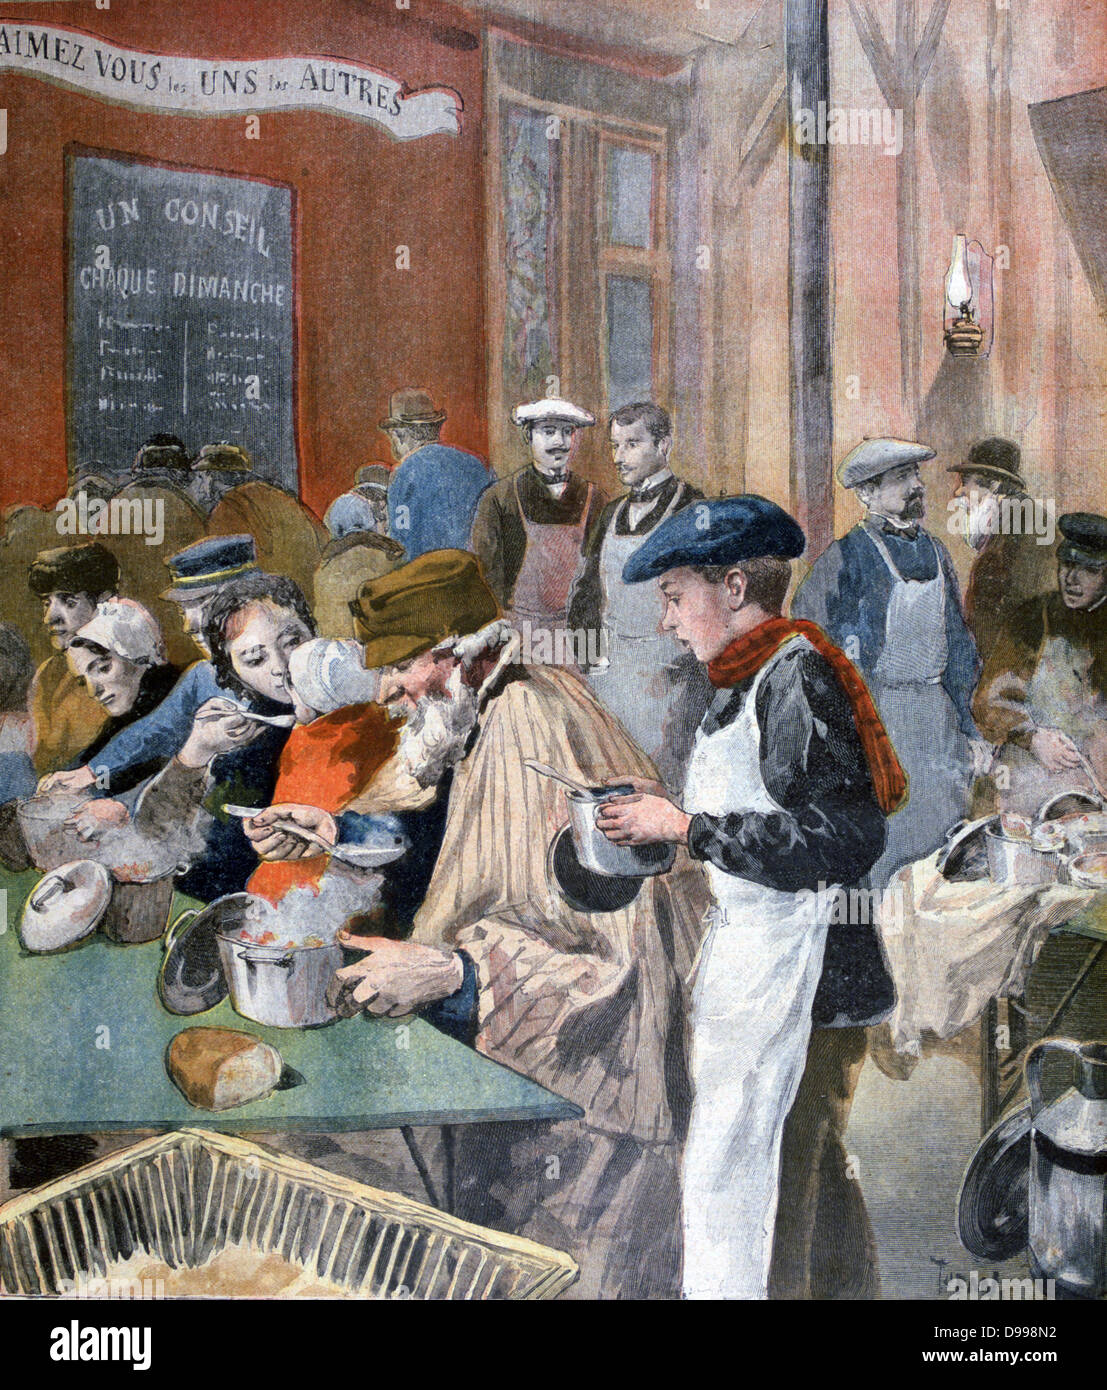 Studenten ihre Zeit als Kellner in einem Pariser Suppenküche zu handeln. Von "Le Petit Journal", Paris, 5. Februar 1894. Frankreich, Liebe, Nahrung, Armut, Hunger Stockfoto